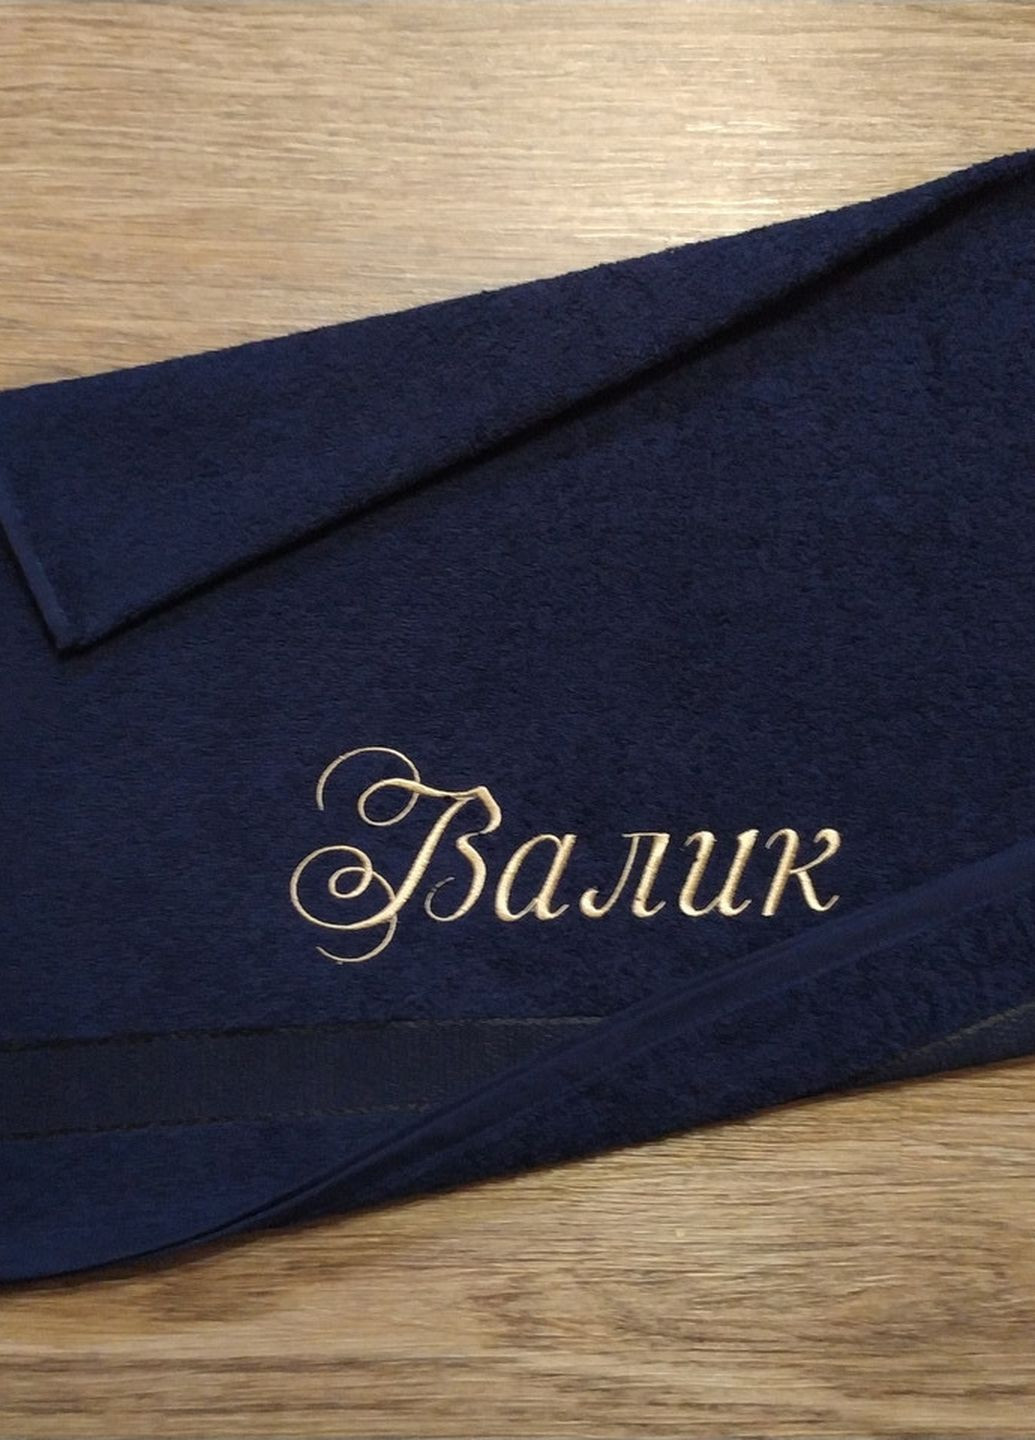 No Brand полотенце с именной вышивкой махровое лицевое 50*90 темно-синий валентин 04248 однотонный темно-синий производство - Украина